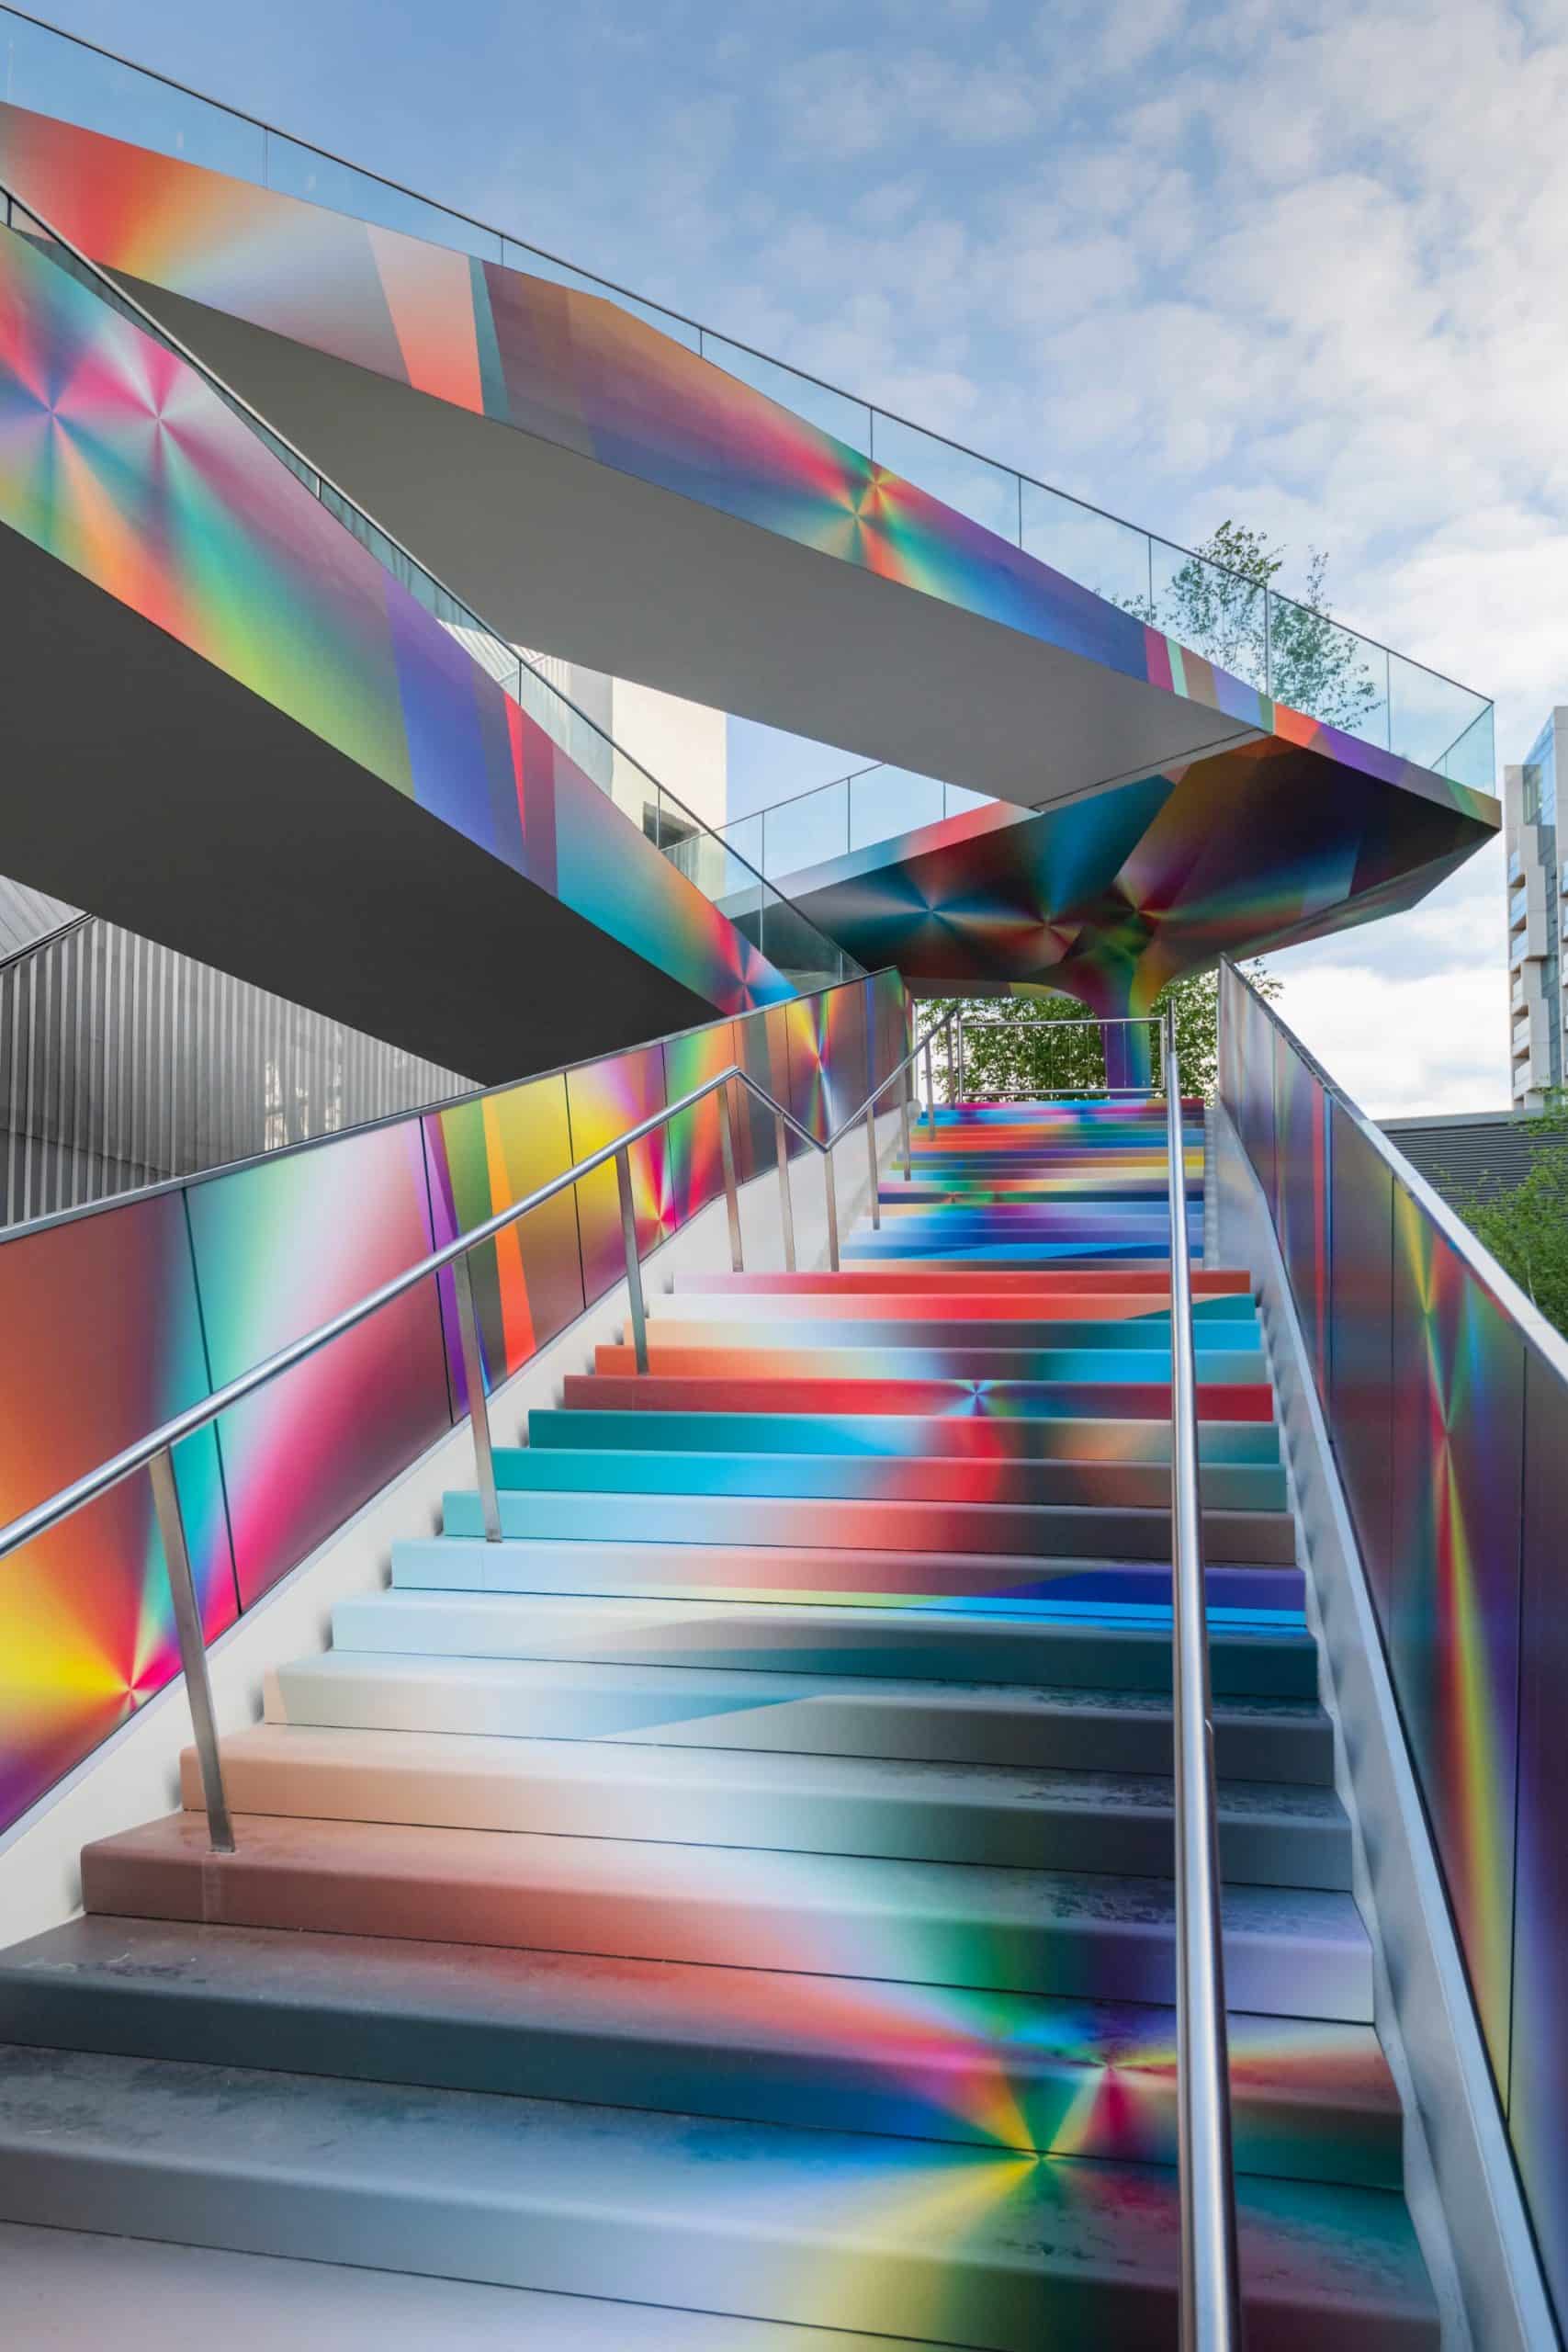 Felipe Pantone y sus intervenciones arquitectónicas llenas de luz y color